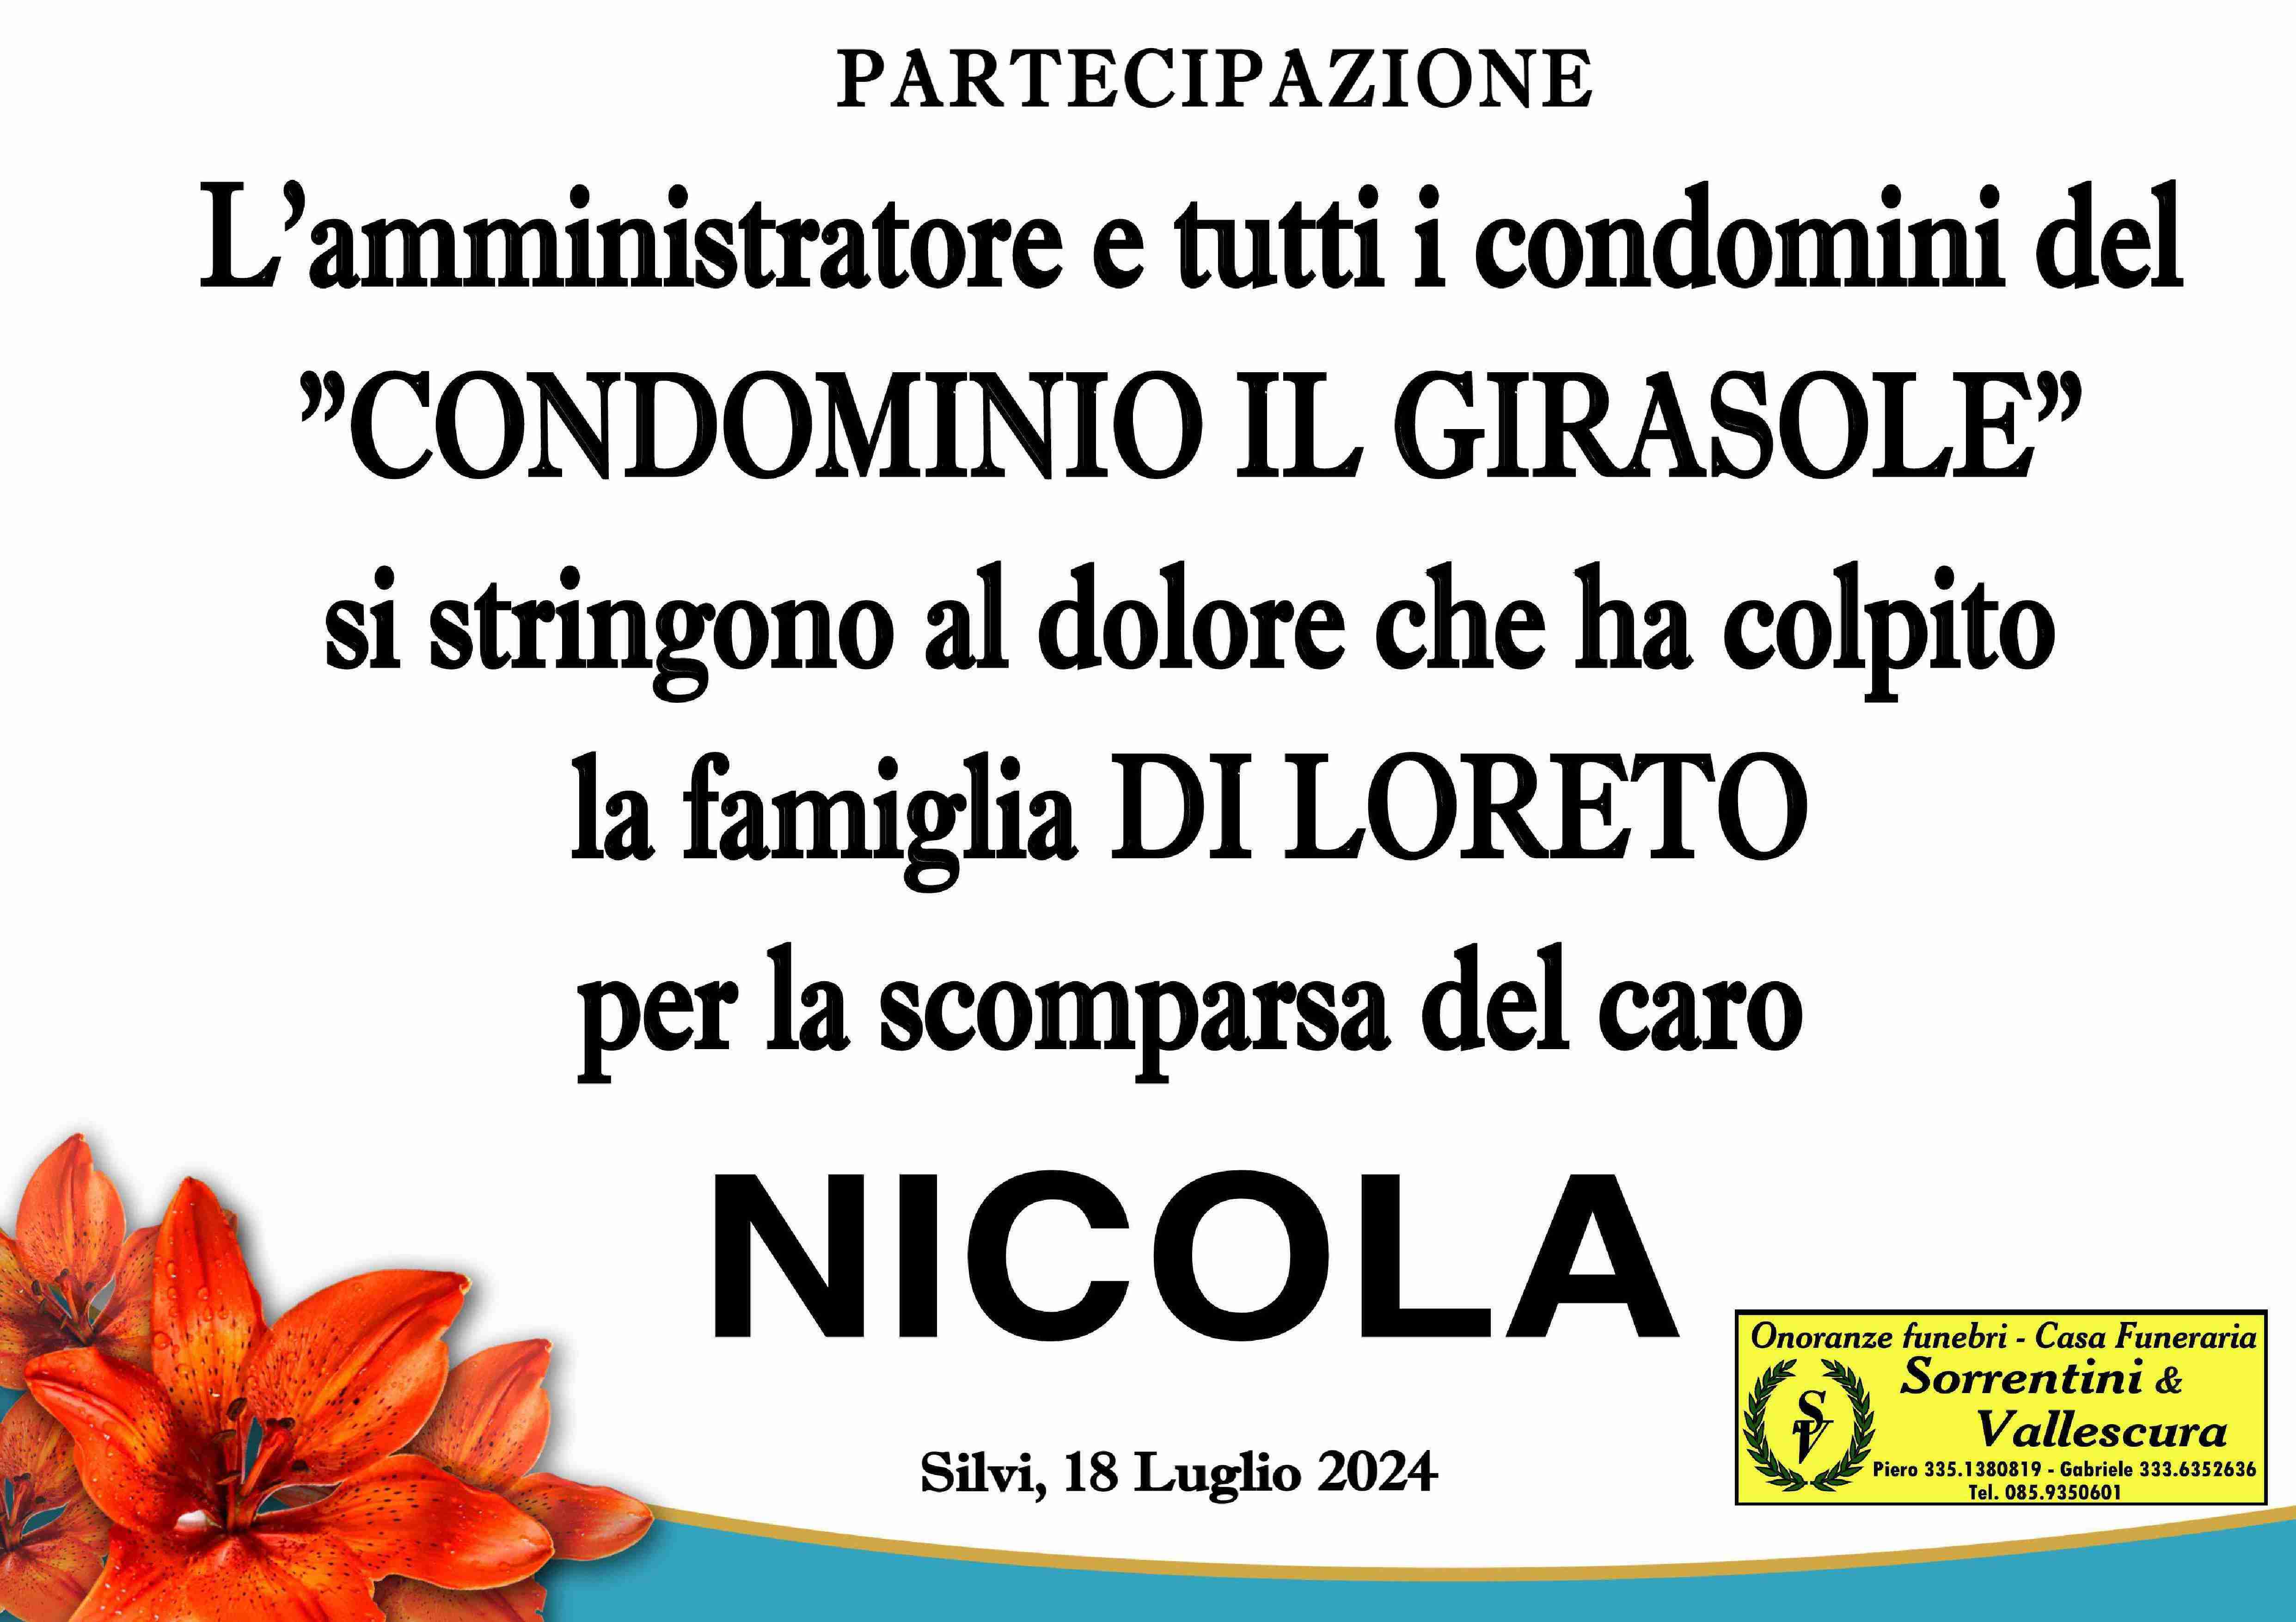 Nicola Di Loreto